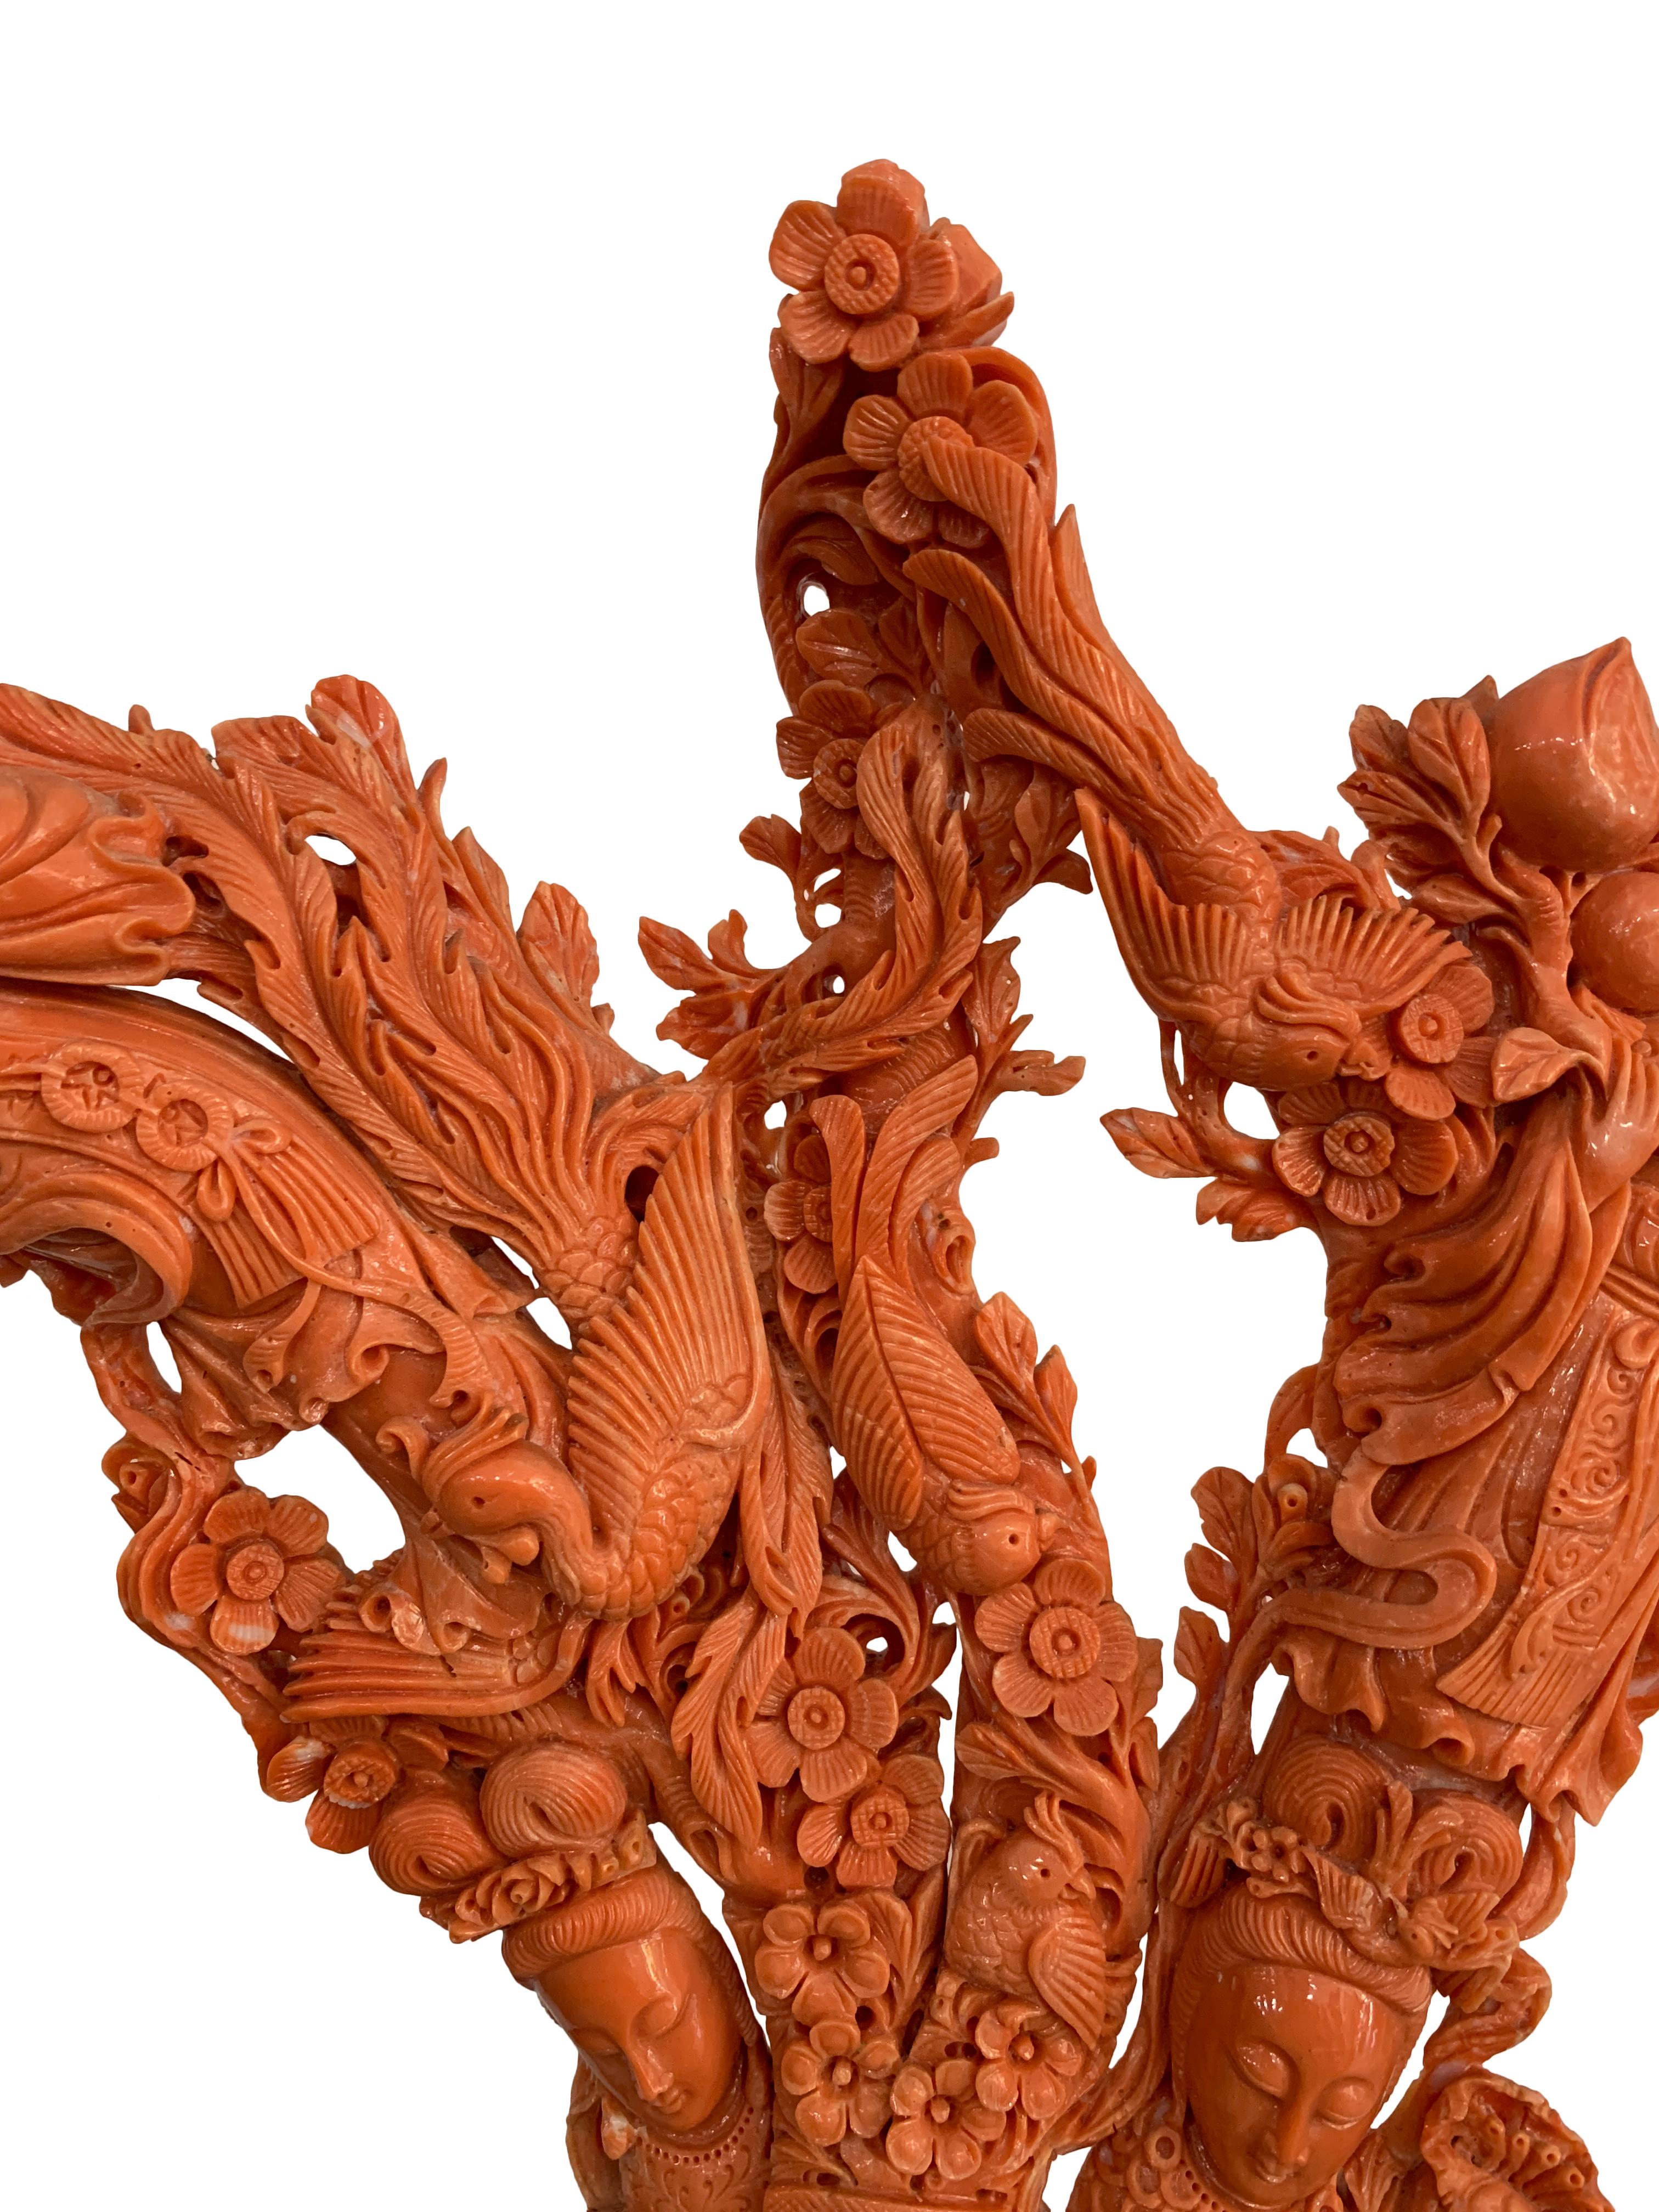 Beeindruckende große chinesische handgeschnitzte Korallenfigurengruppe in kaiserlicher Qualität, die vier weibliche Unsterbliche mit Blumen, Blättern und Vögeln darstellt. Unglaublich geschnitzt mit viel Liebe zum Detail in allen Bereichen.